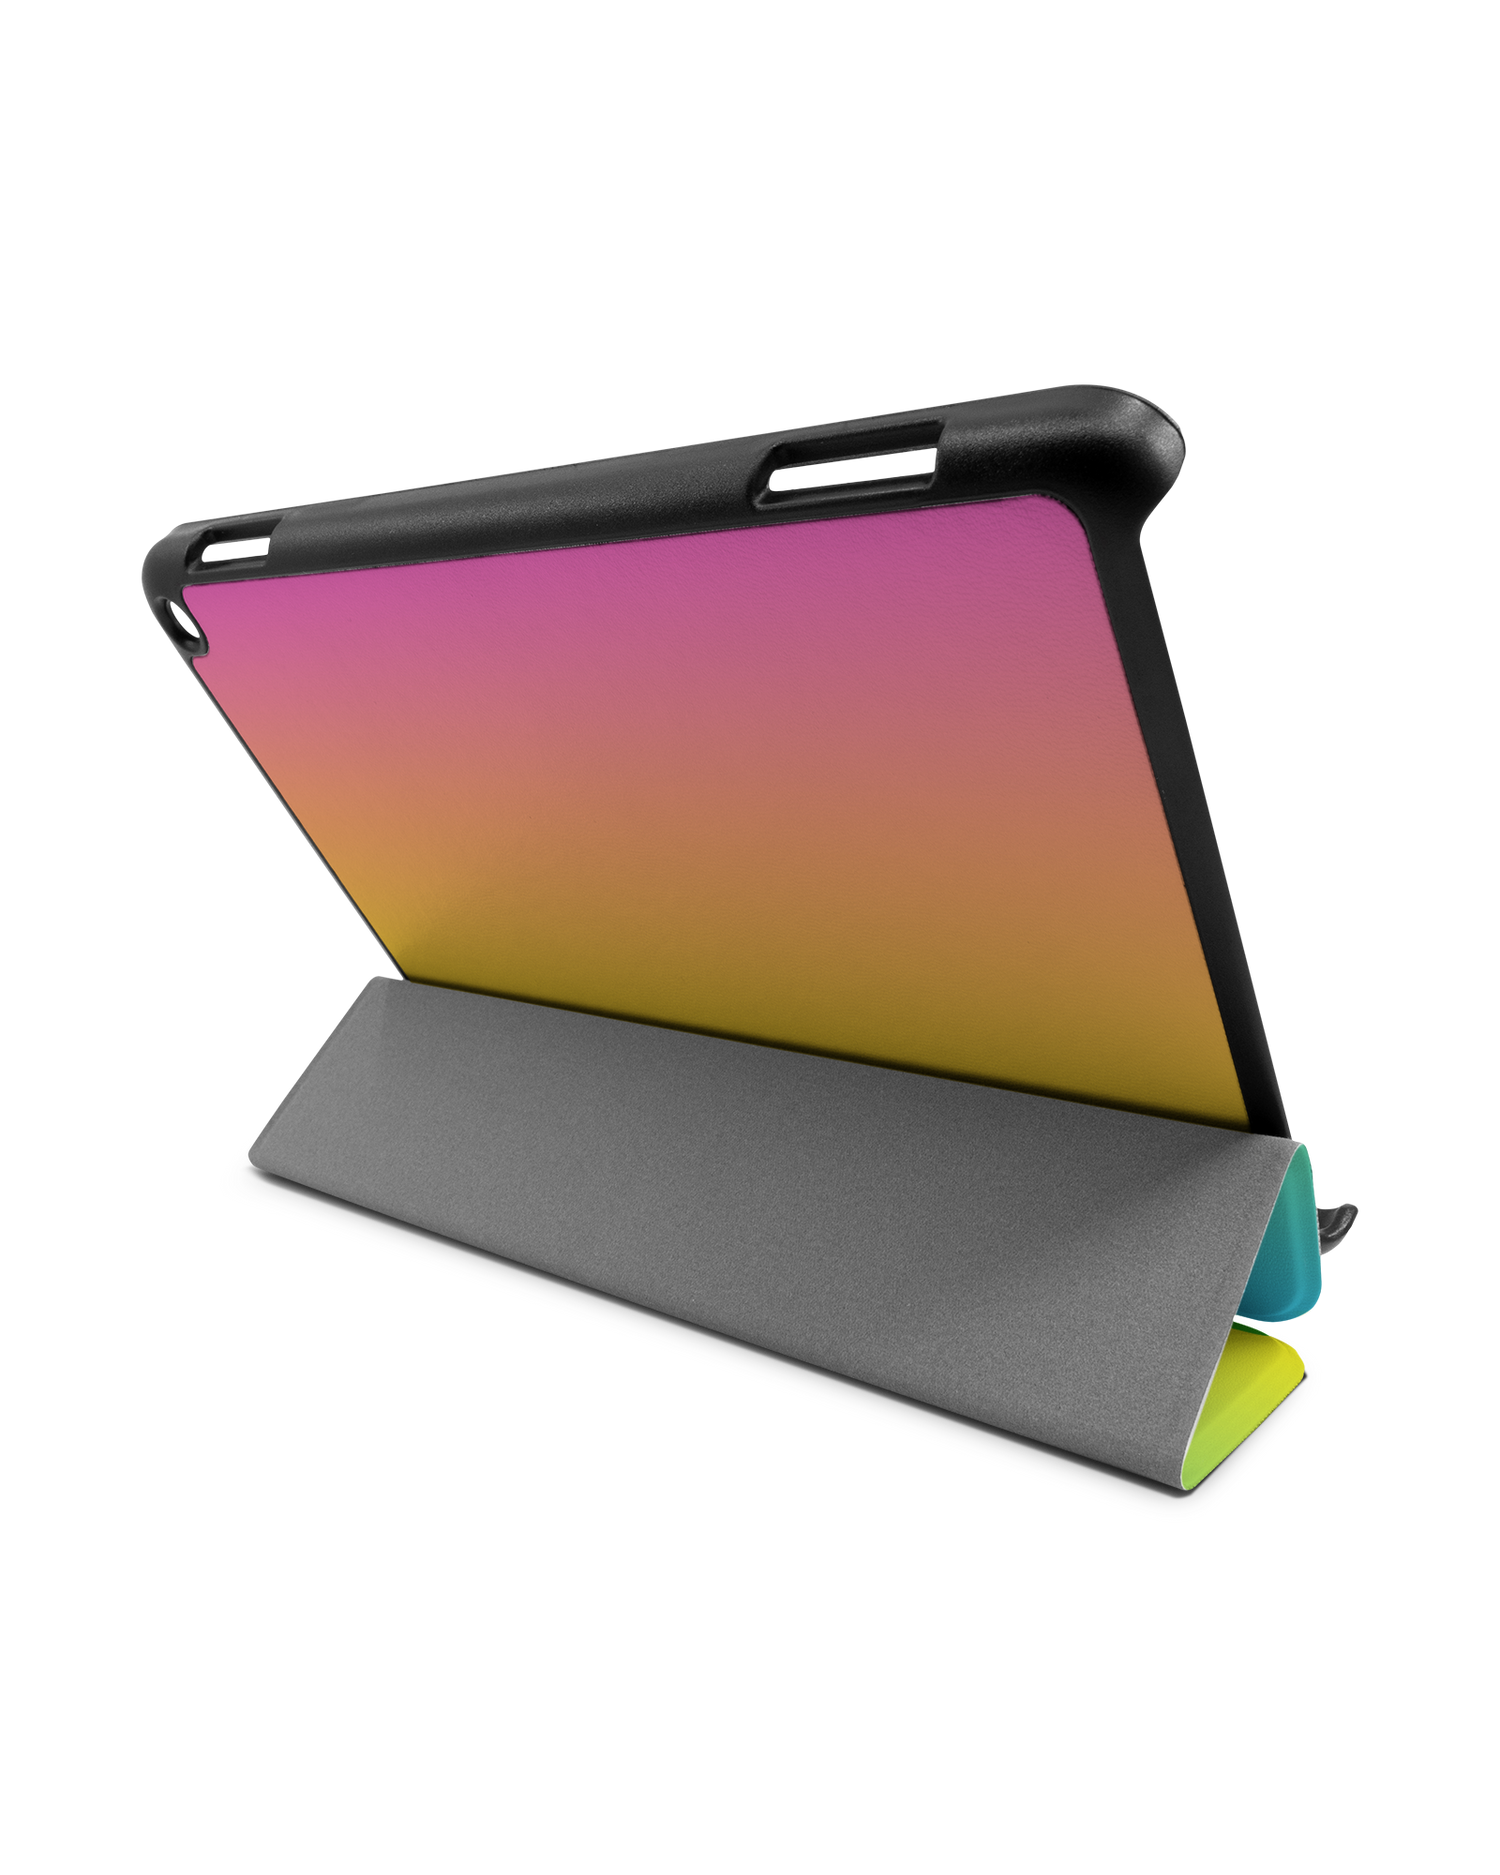 Have A Day Tablet Smart Case für Amazon Fire HD 8 (2022), Amazon Fire HD 8 Plus (2022), Amazon Fire HD 8 (2020), Amazon Fire HD 8 Plus (2020): Aufgestellt im Querformat